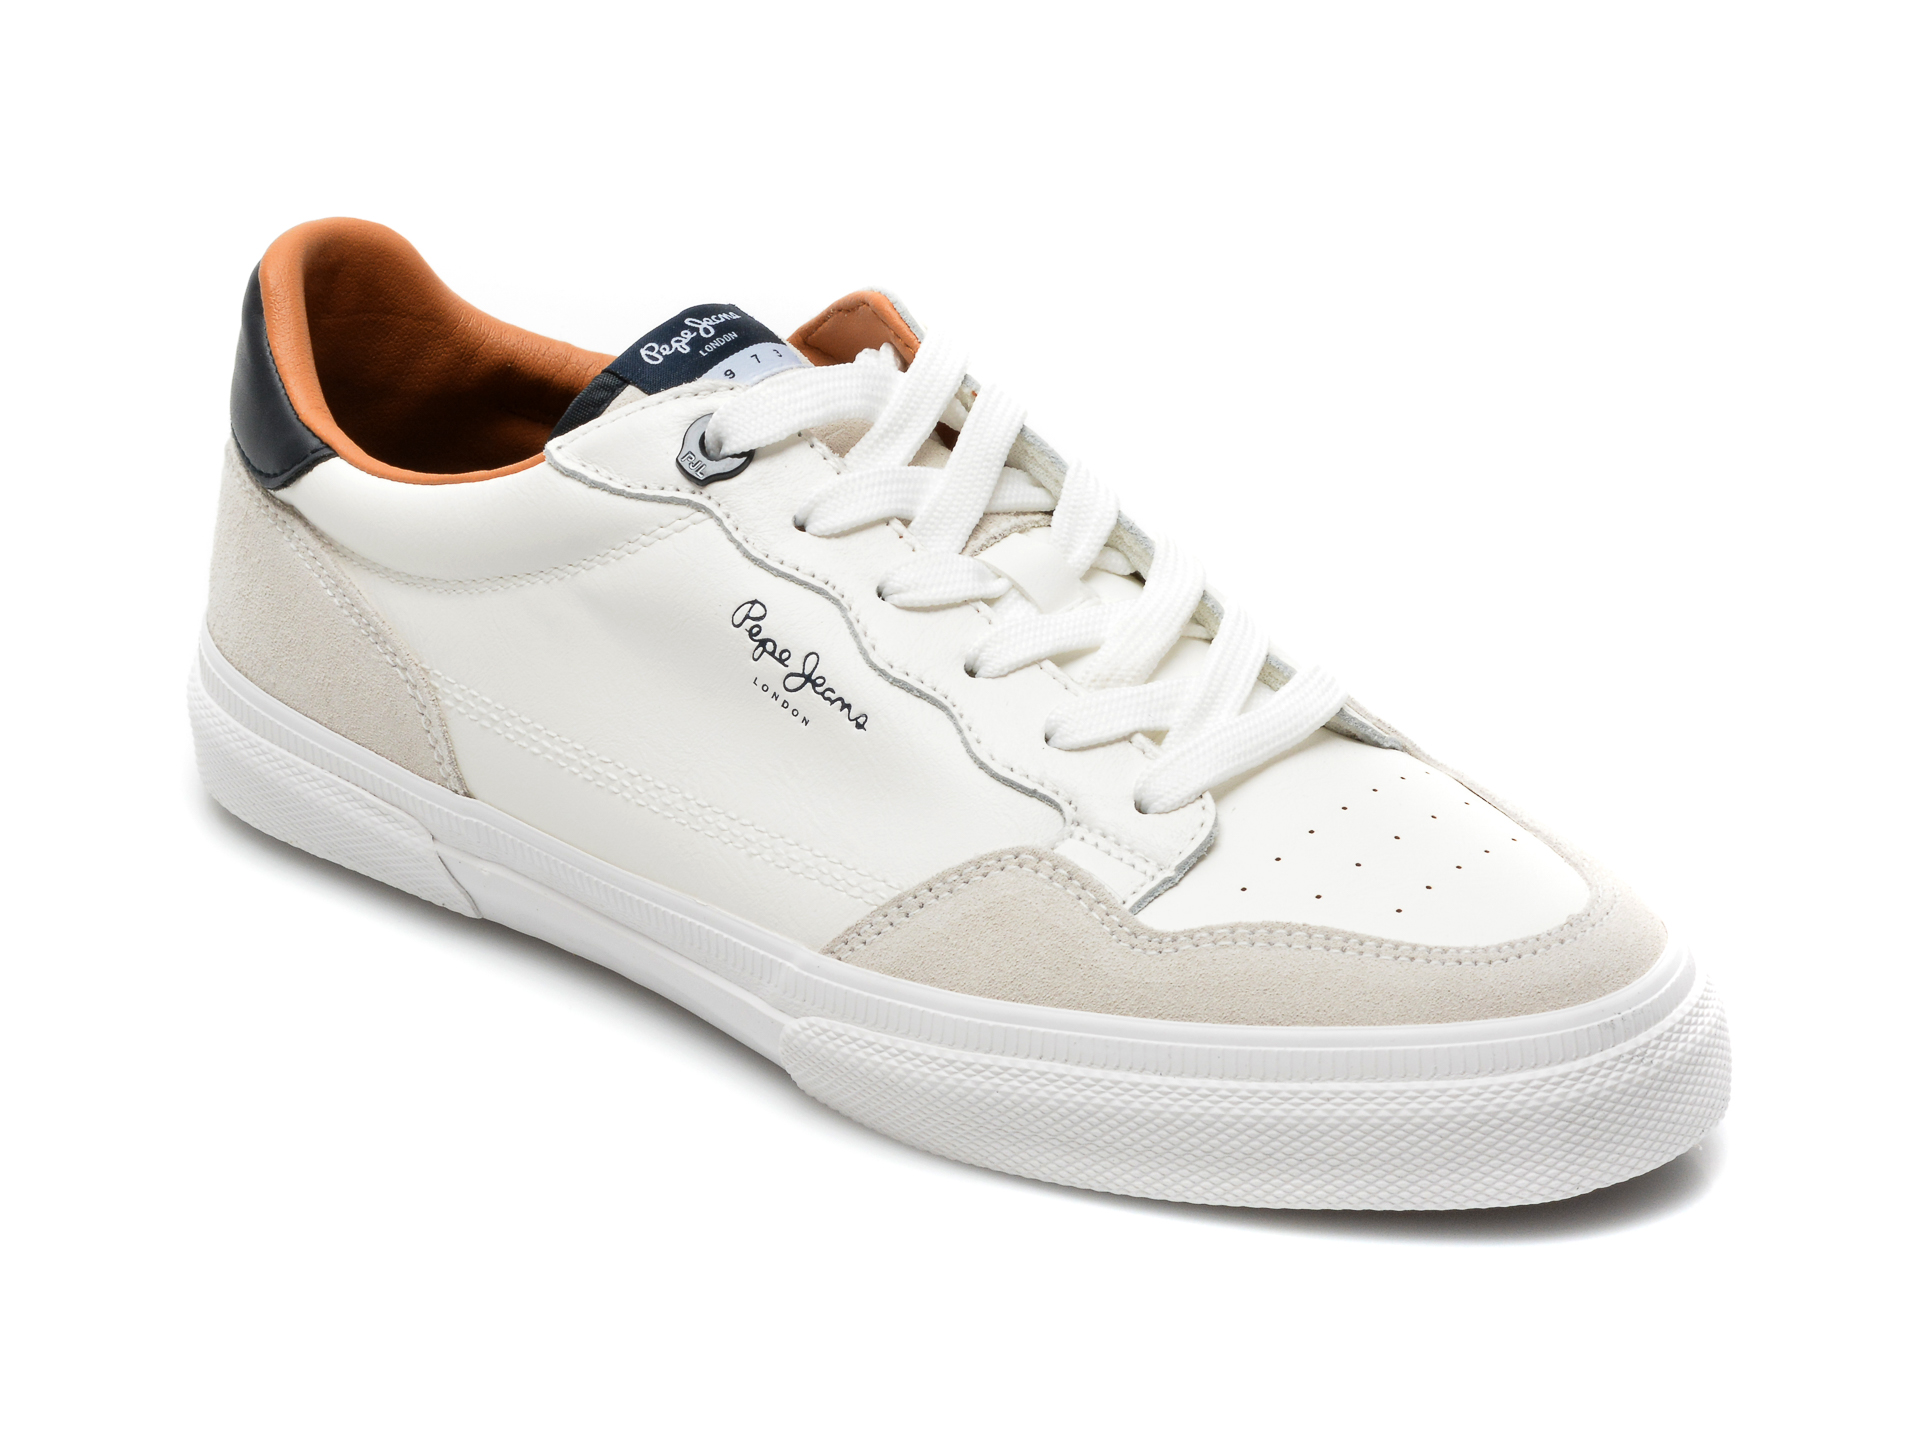 Pantofi sport PEPE JEANS albi, MS30765, din piele ecologica Pepe Jeans imagine reduceri